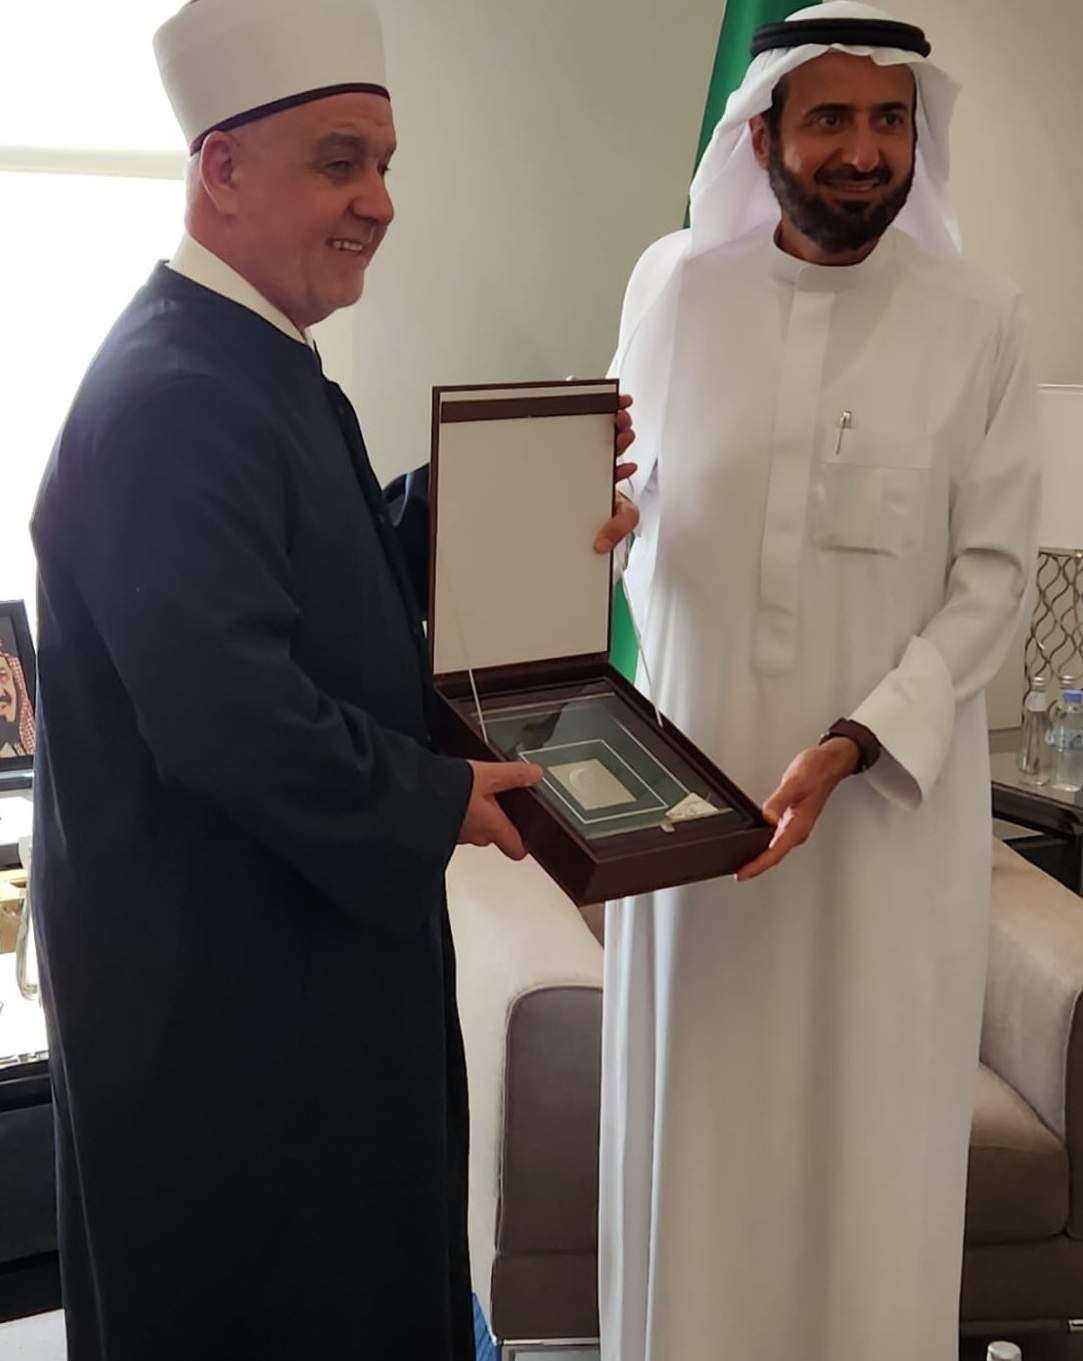 Reisul-ulema - Ministar hadža KSA 2.jpg - Reisul-ulema posjetio saudijskog ministra za hadž i umru